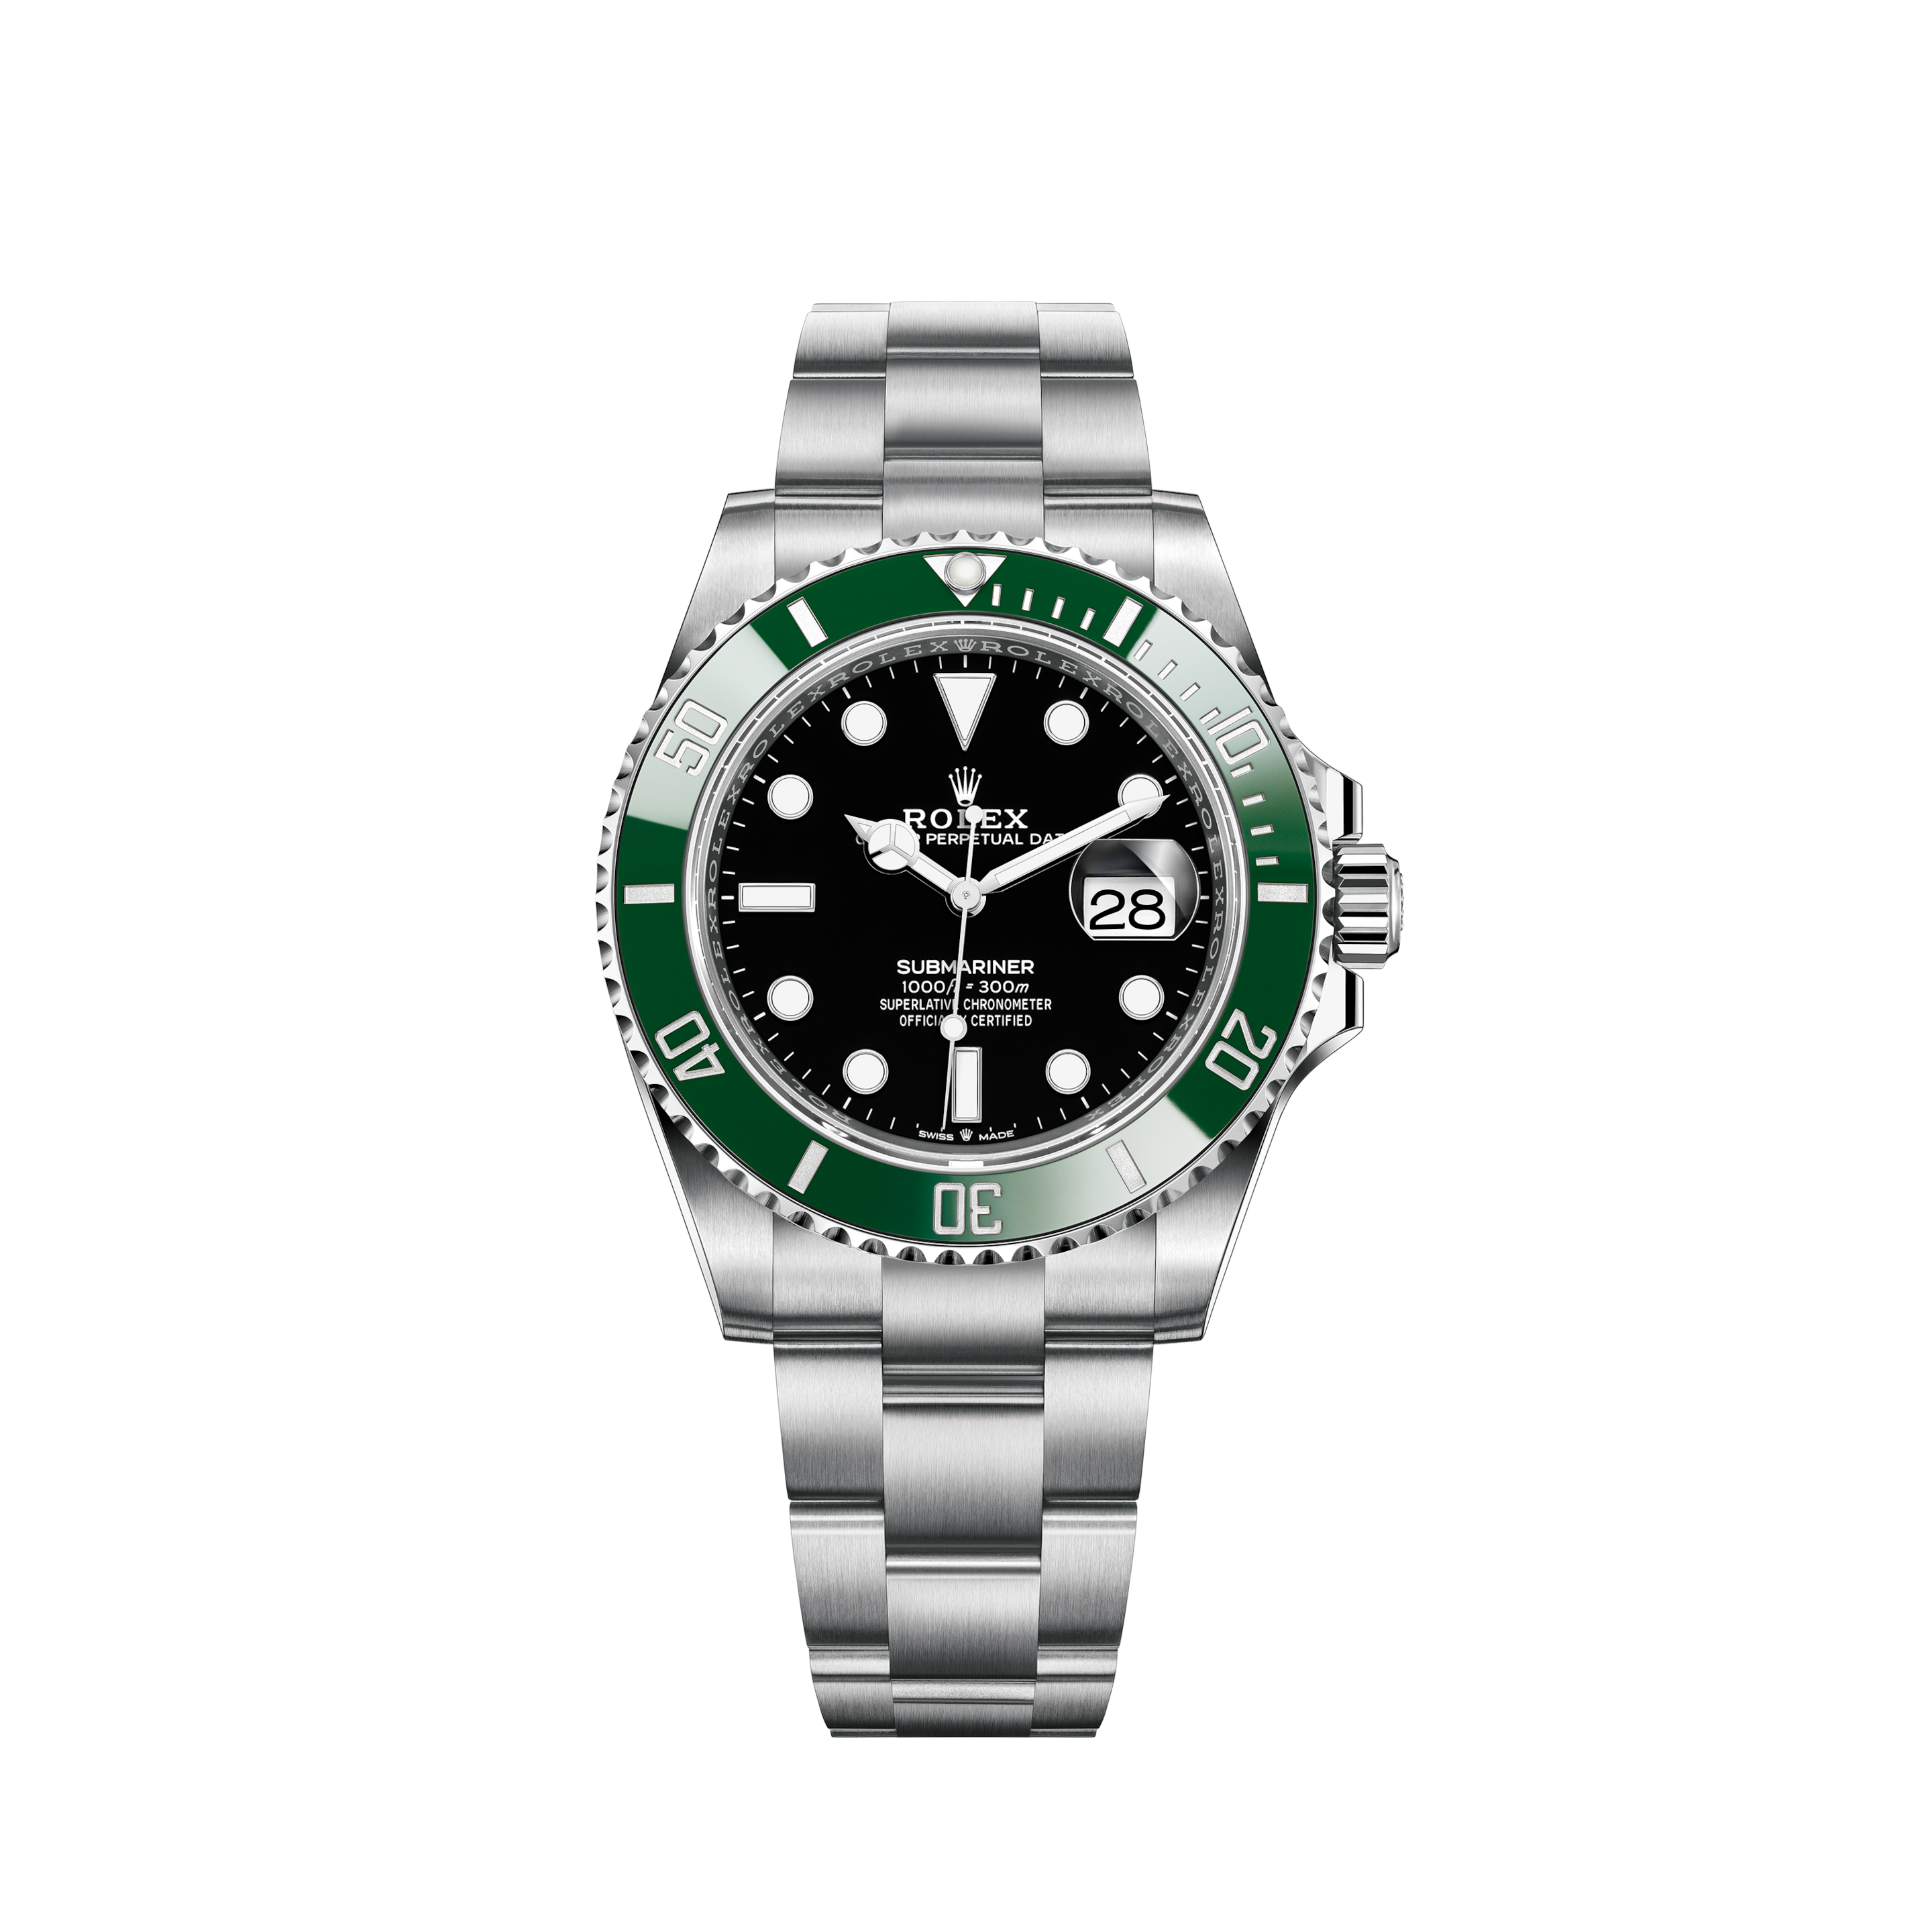 Rolex Datejust 16013 Stainless Steel 36mm watch